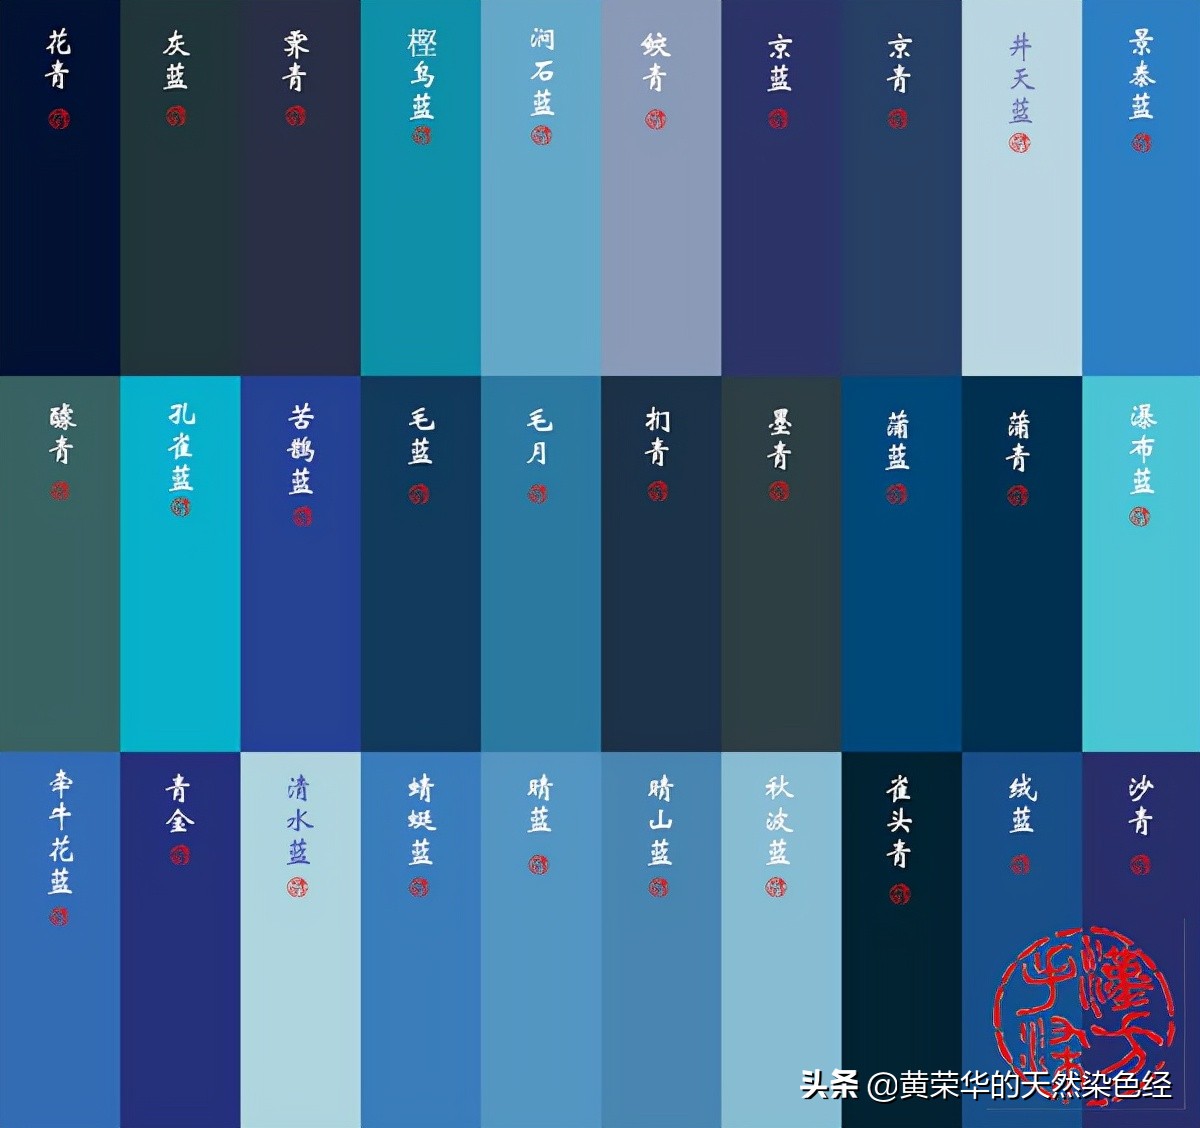 青色,中国传统色彩五正色之一